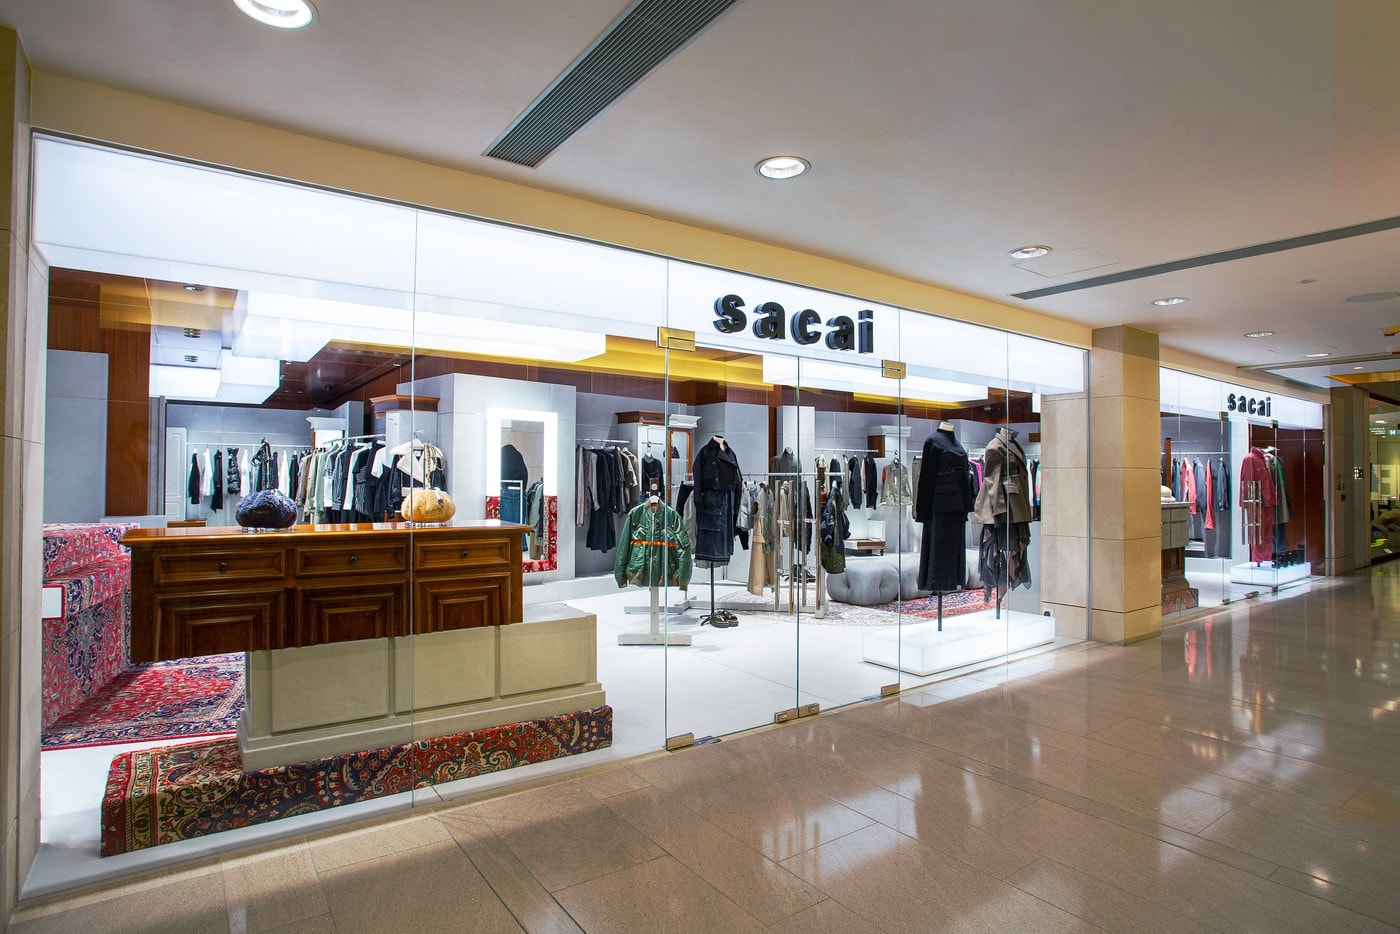 sacai 登陸香港中環置地廣場開設全新專門店